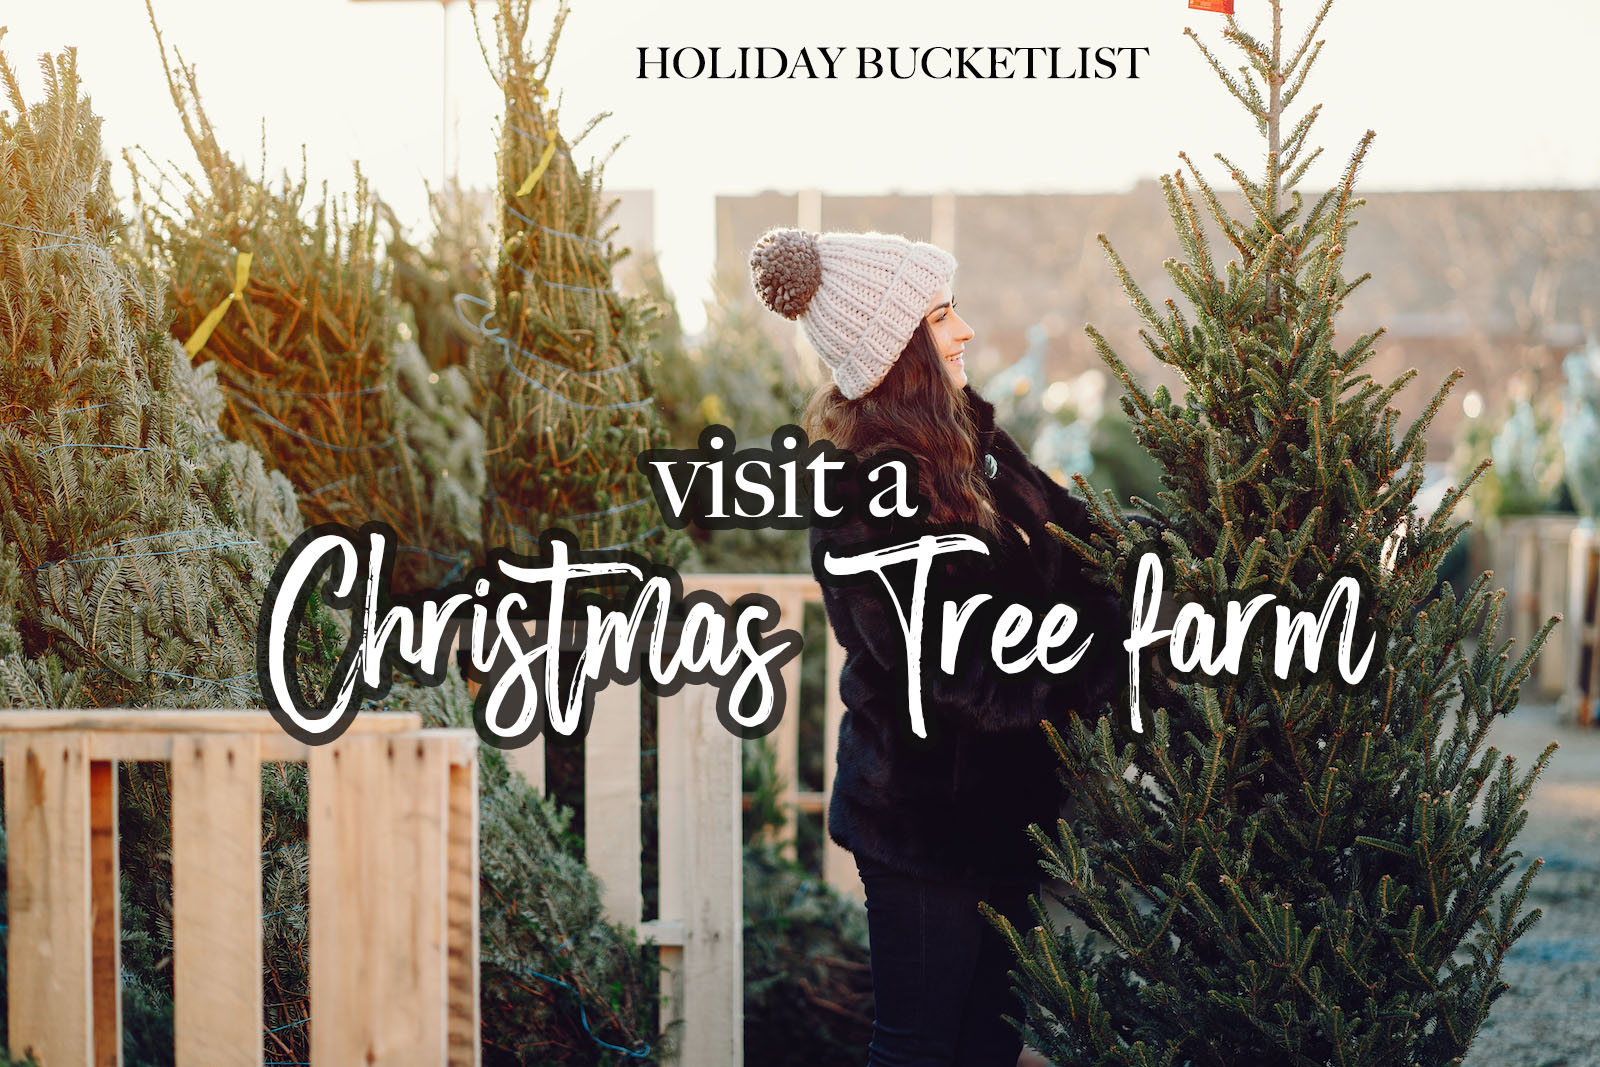 Christmas Trees Near Me - Cut Your own tree farm- Holiday Bucketlist